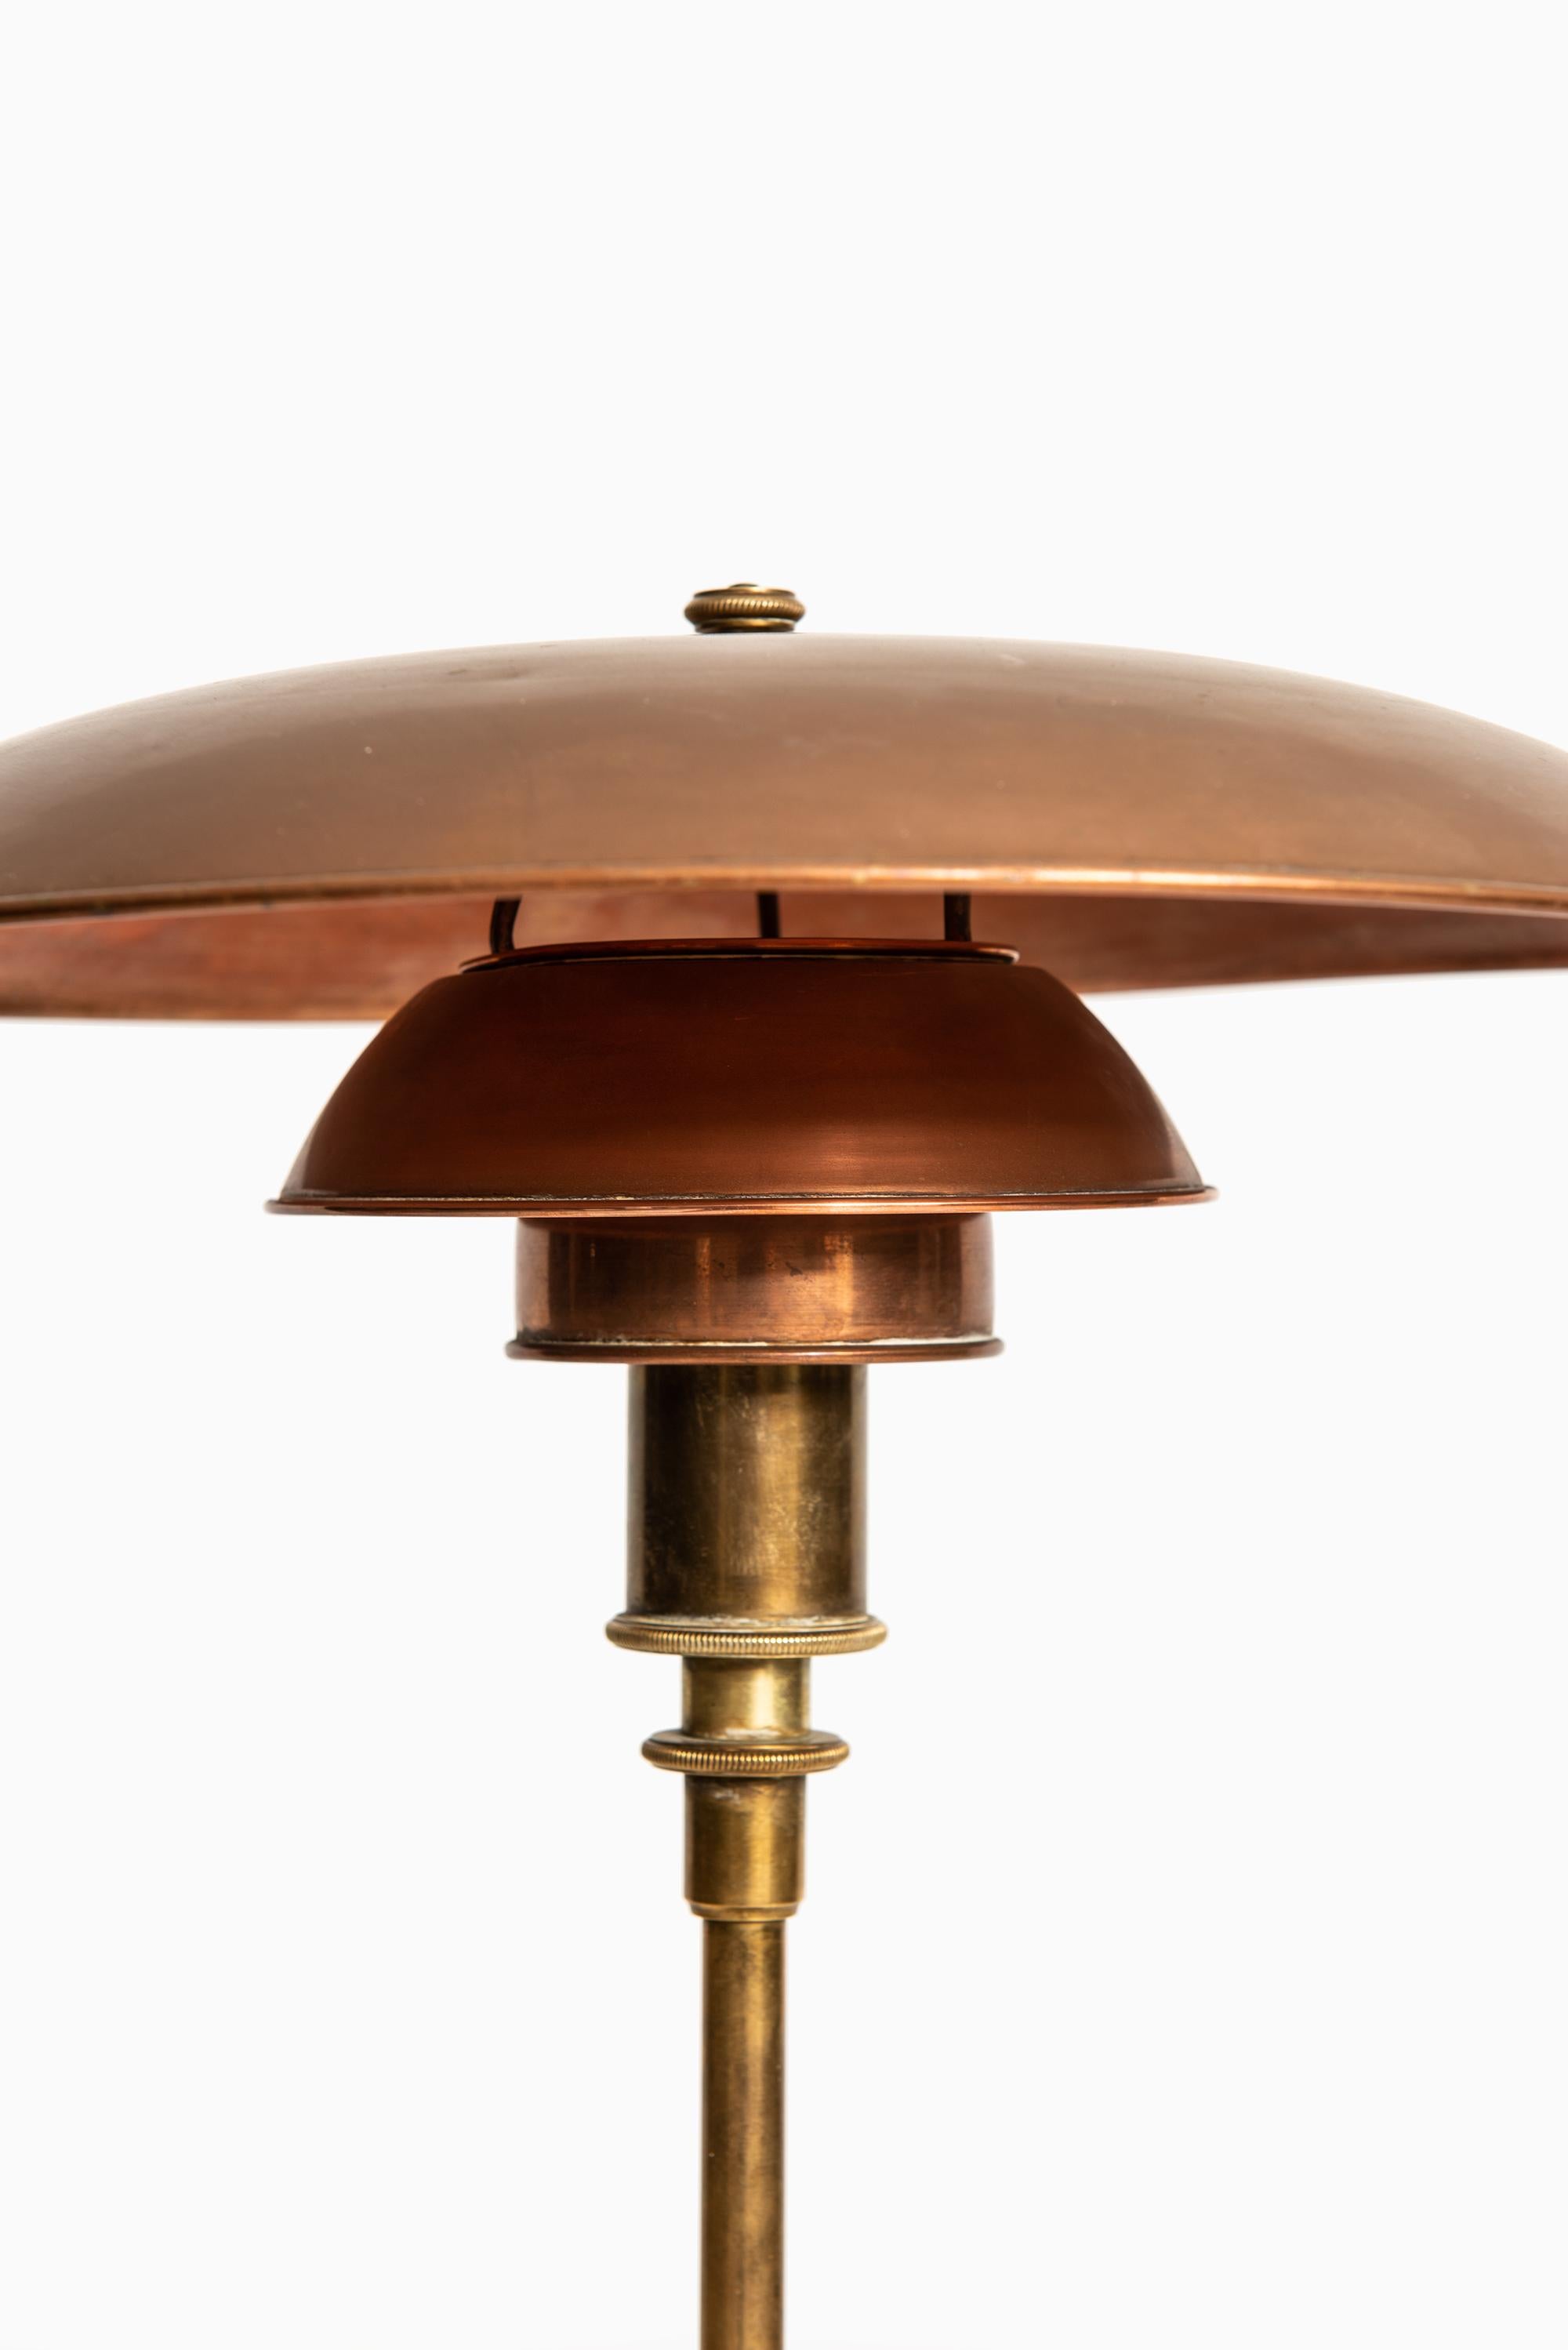 Rare lampe de table modèle PH 3½/2 conçue par Poul Henningsen. Produit par Louis Poulsen au Danemark. Marqué 